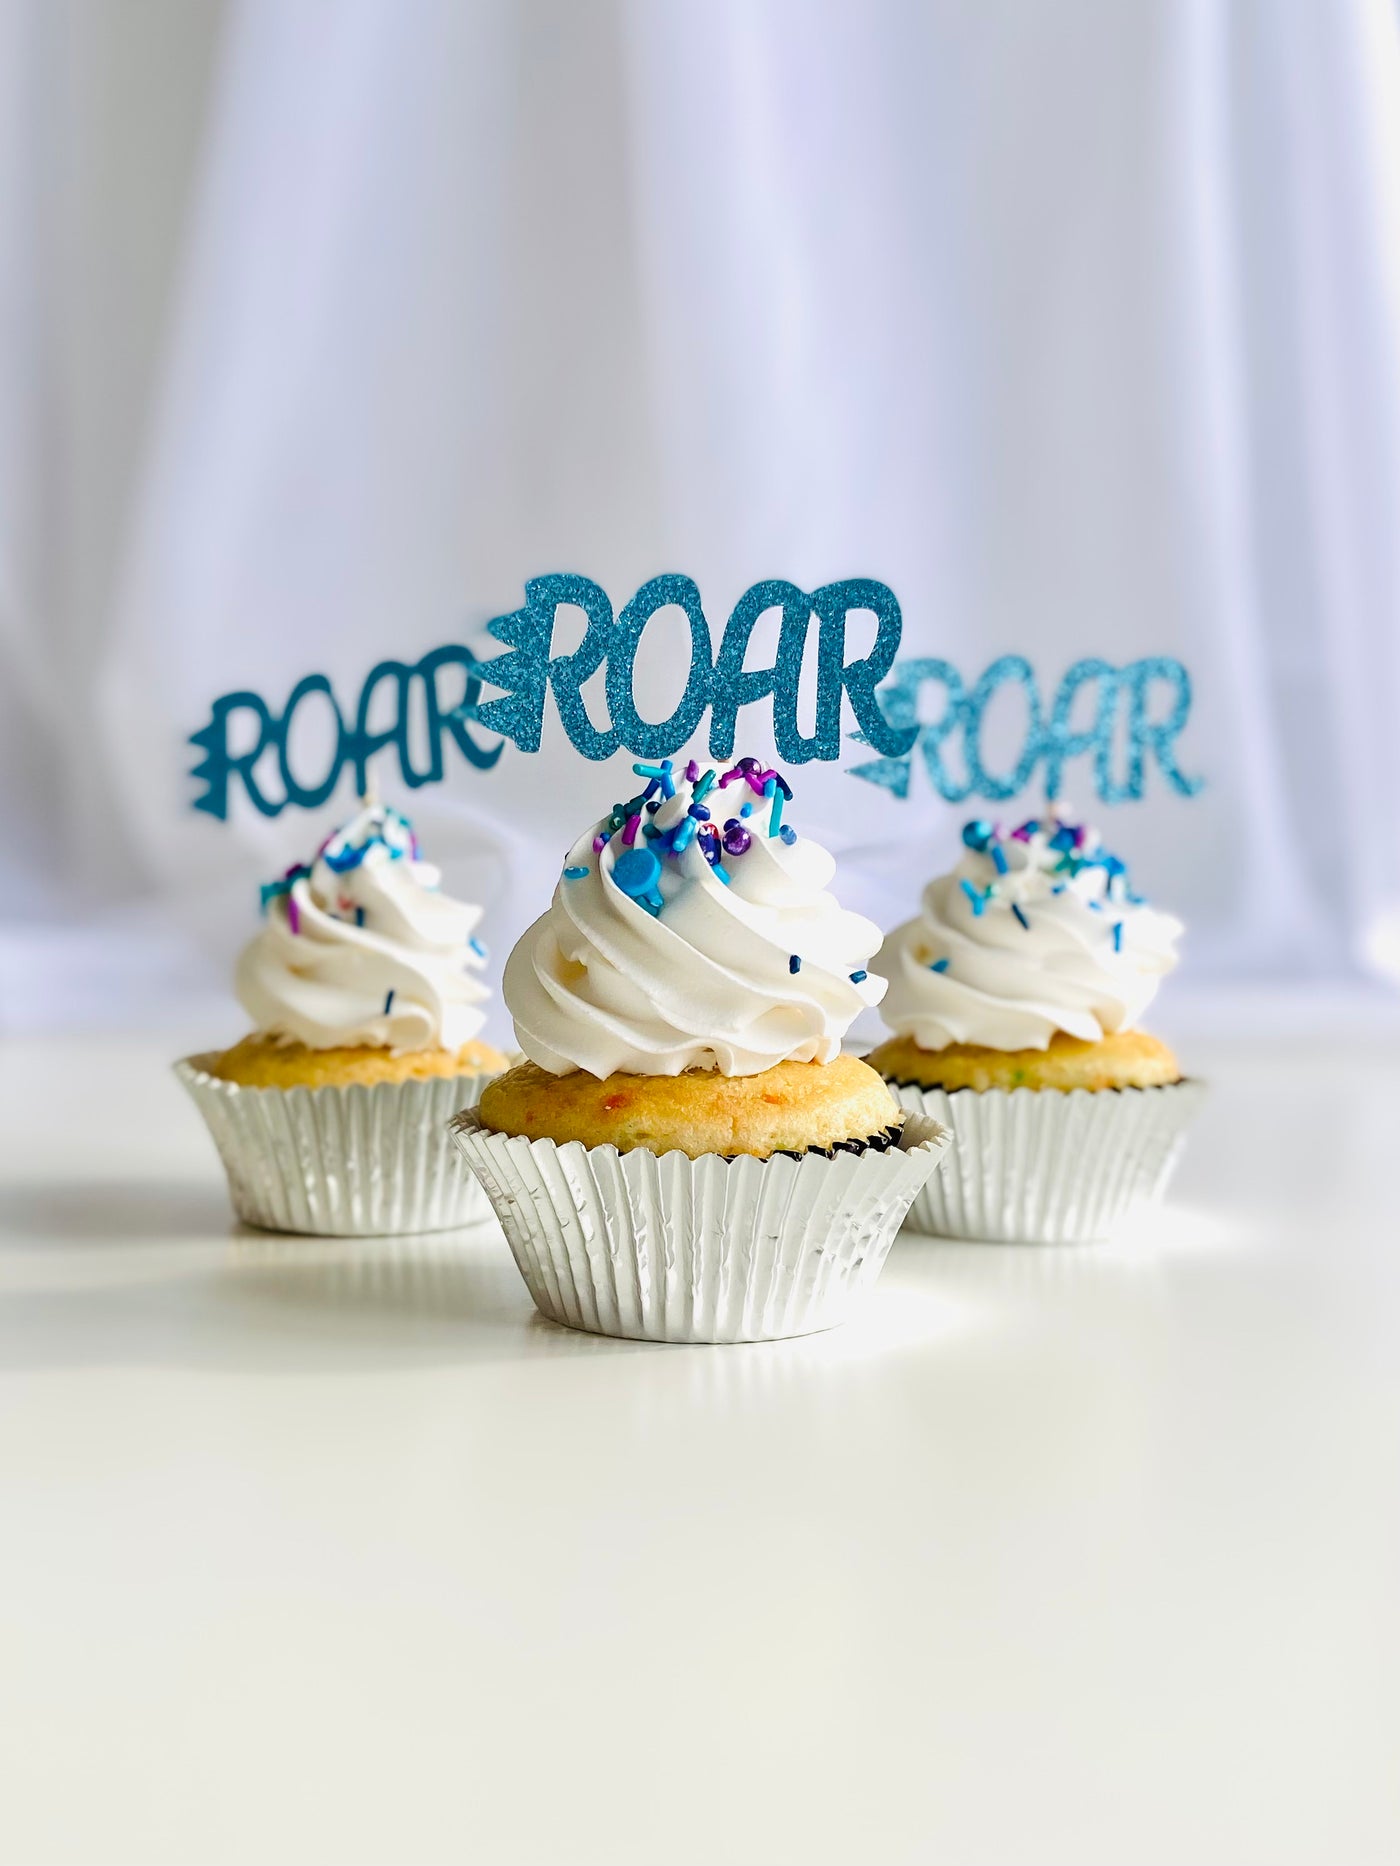 ROAR cupcake toppers, blue